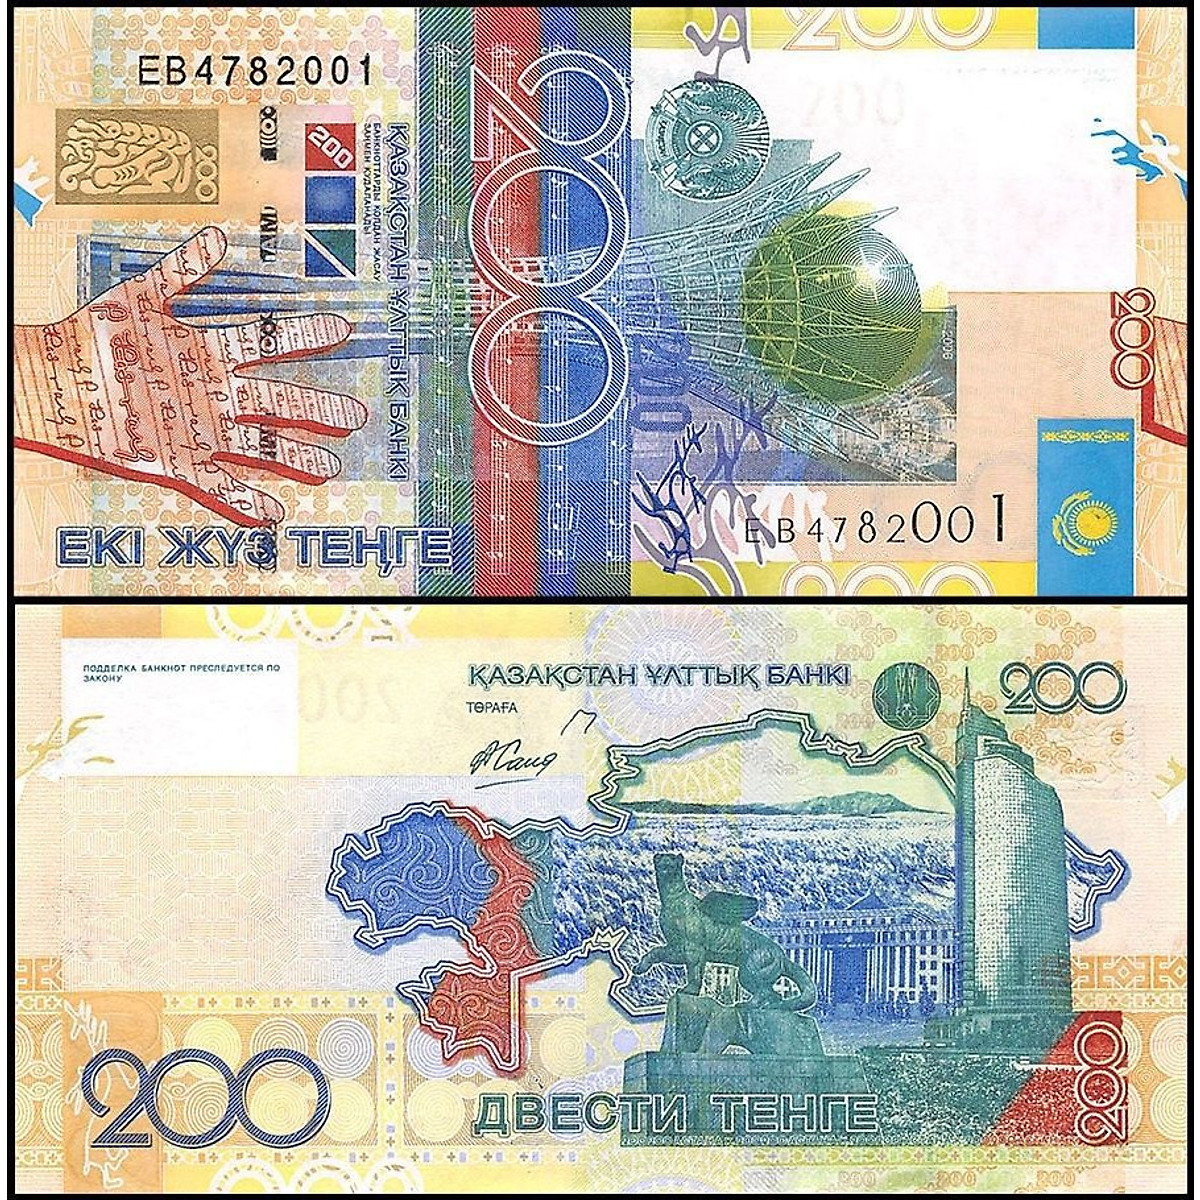 Tiền Kazakhstan mệnh giá 200 Tehe sưu tầm - Tiền mới keng 100% - Tặng túi nilon bảo quản